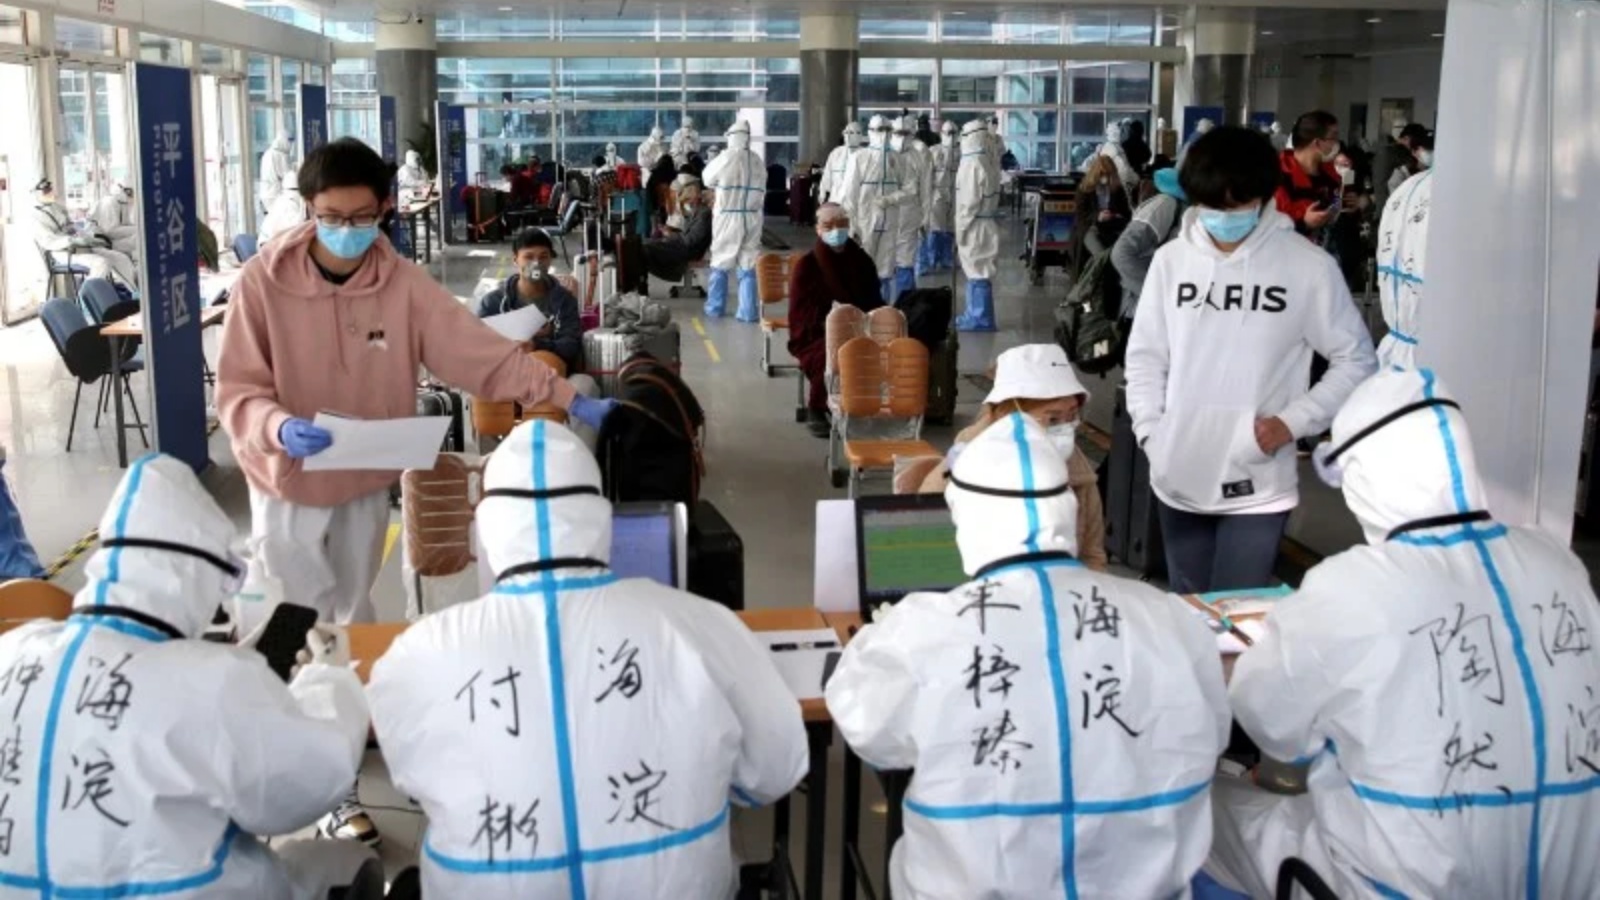 عمال صحيون يرتدون بدلات عازلة في المطار عملاً بقيود مكافحة كوفيد-19 في بكين 